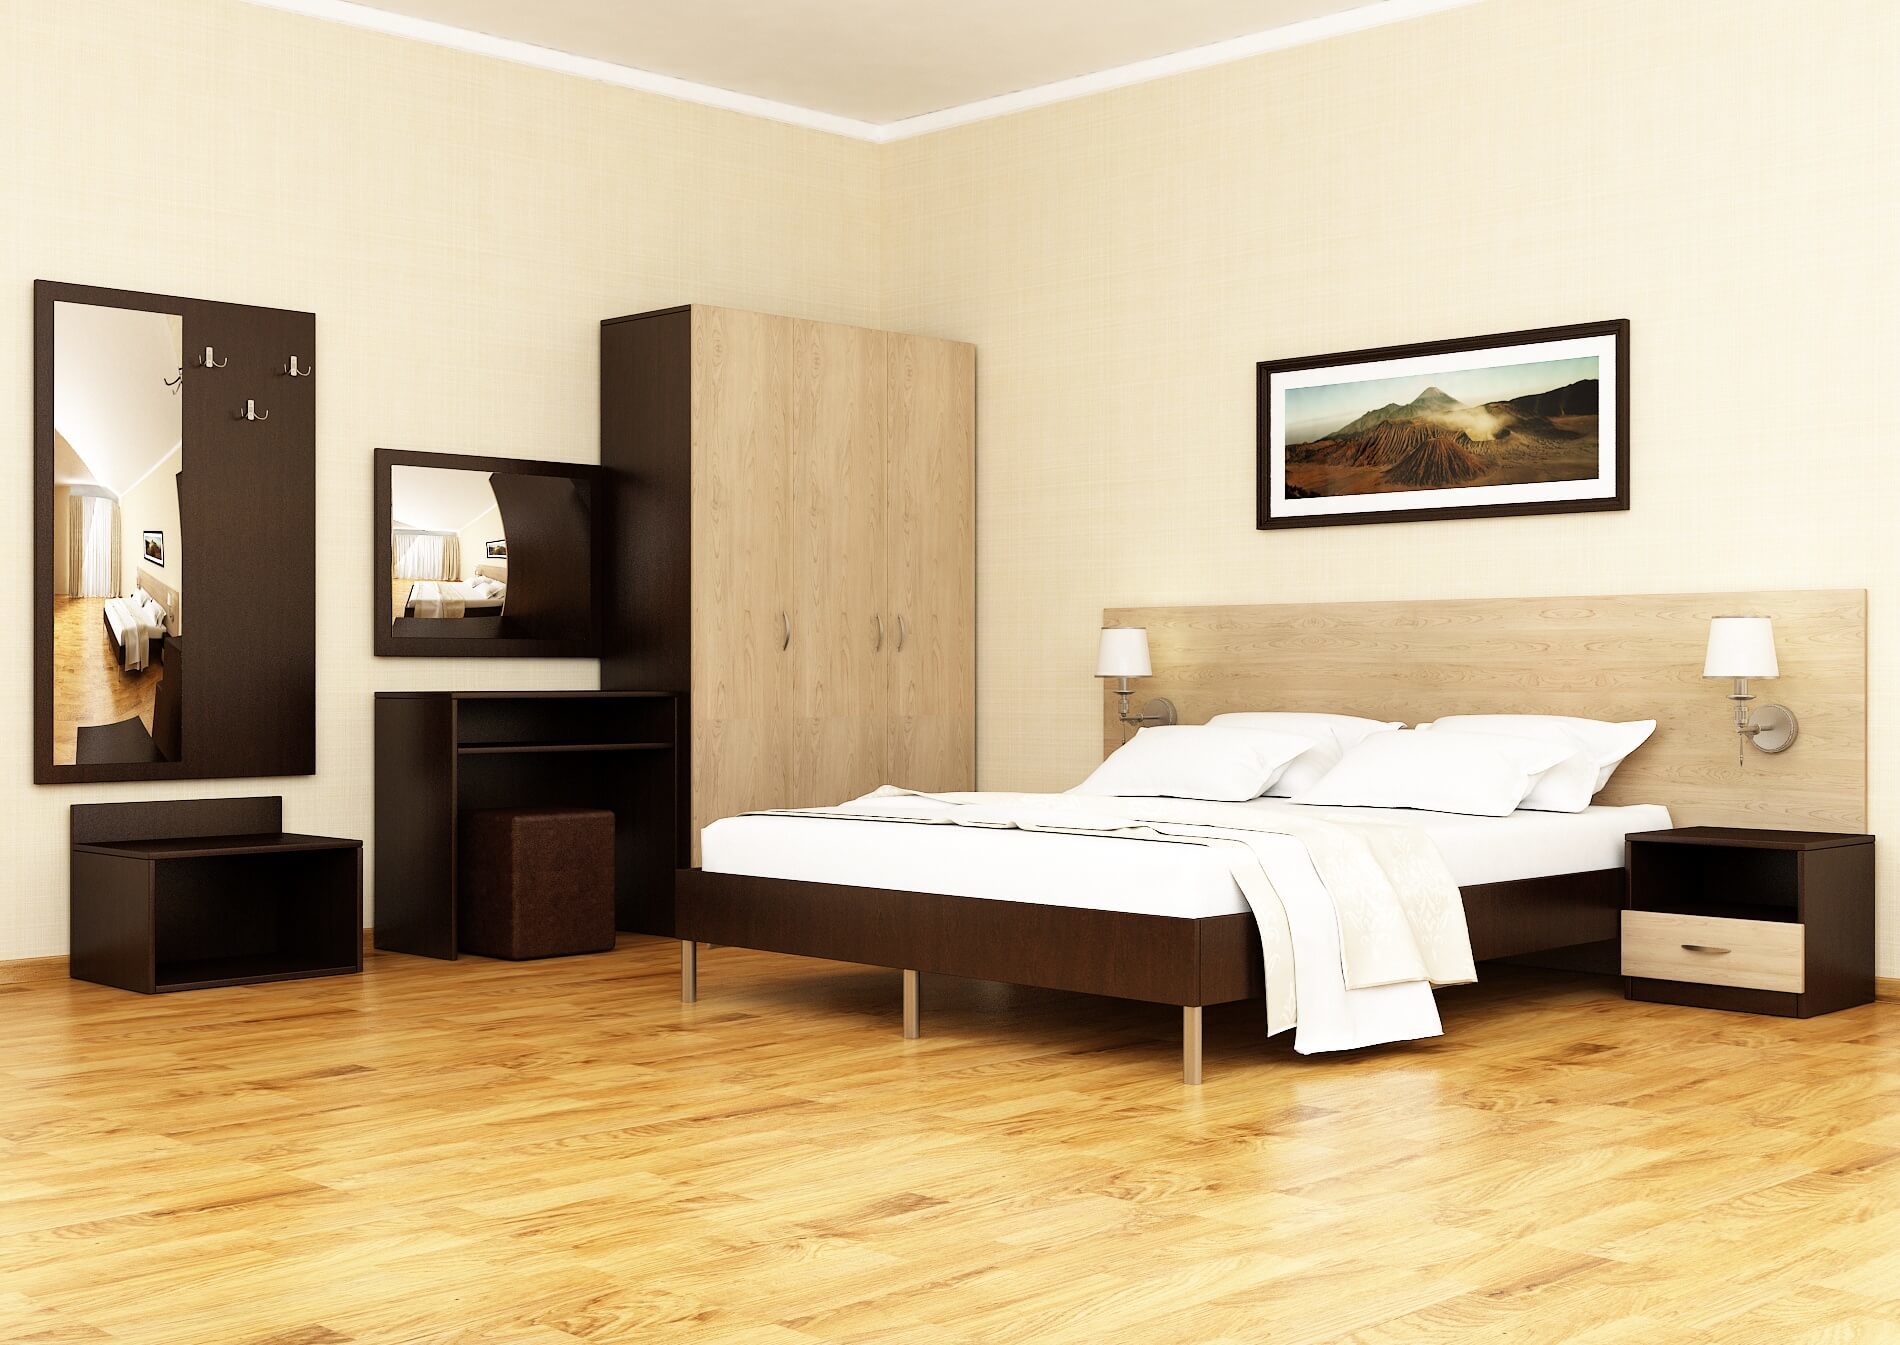 мебель для гостиниц и отелей от производителя краснодарский край